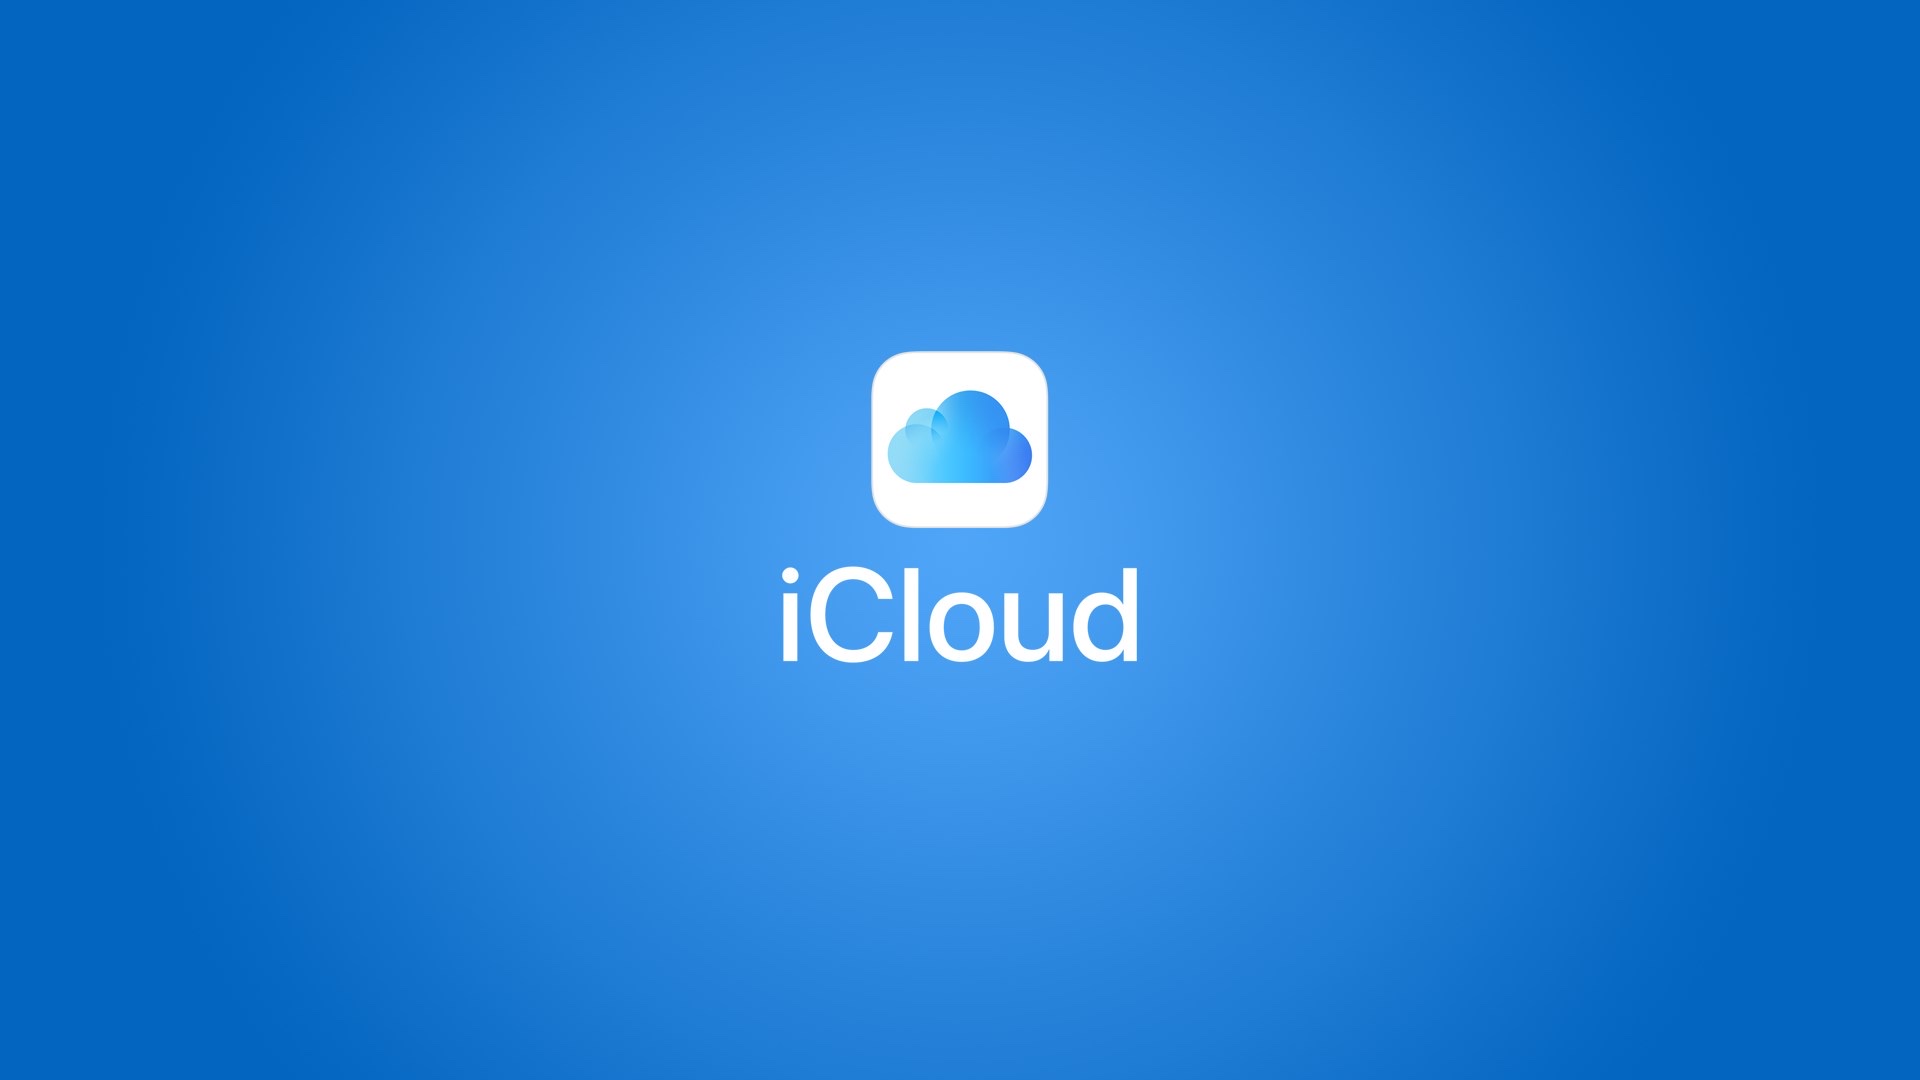 Apple merilis versi baru iCloud yang dioptimalkan untuk Windows 10 1